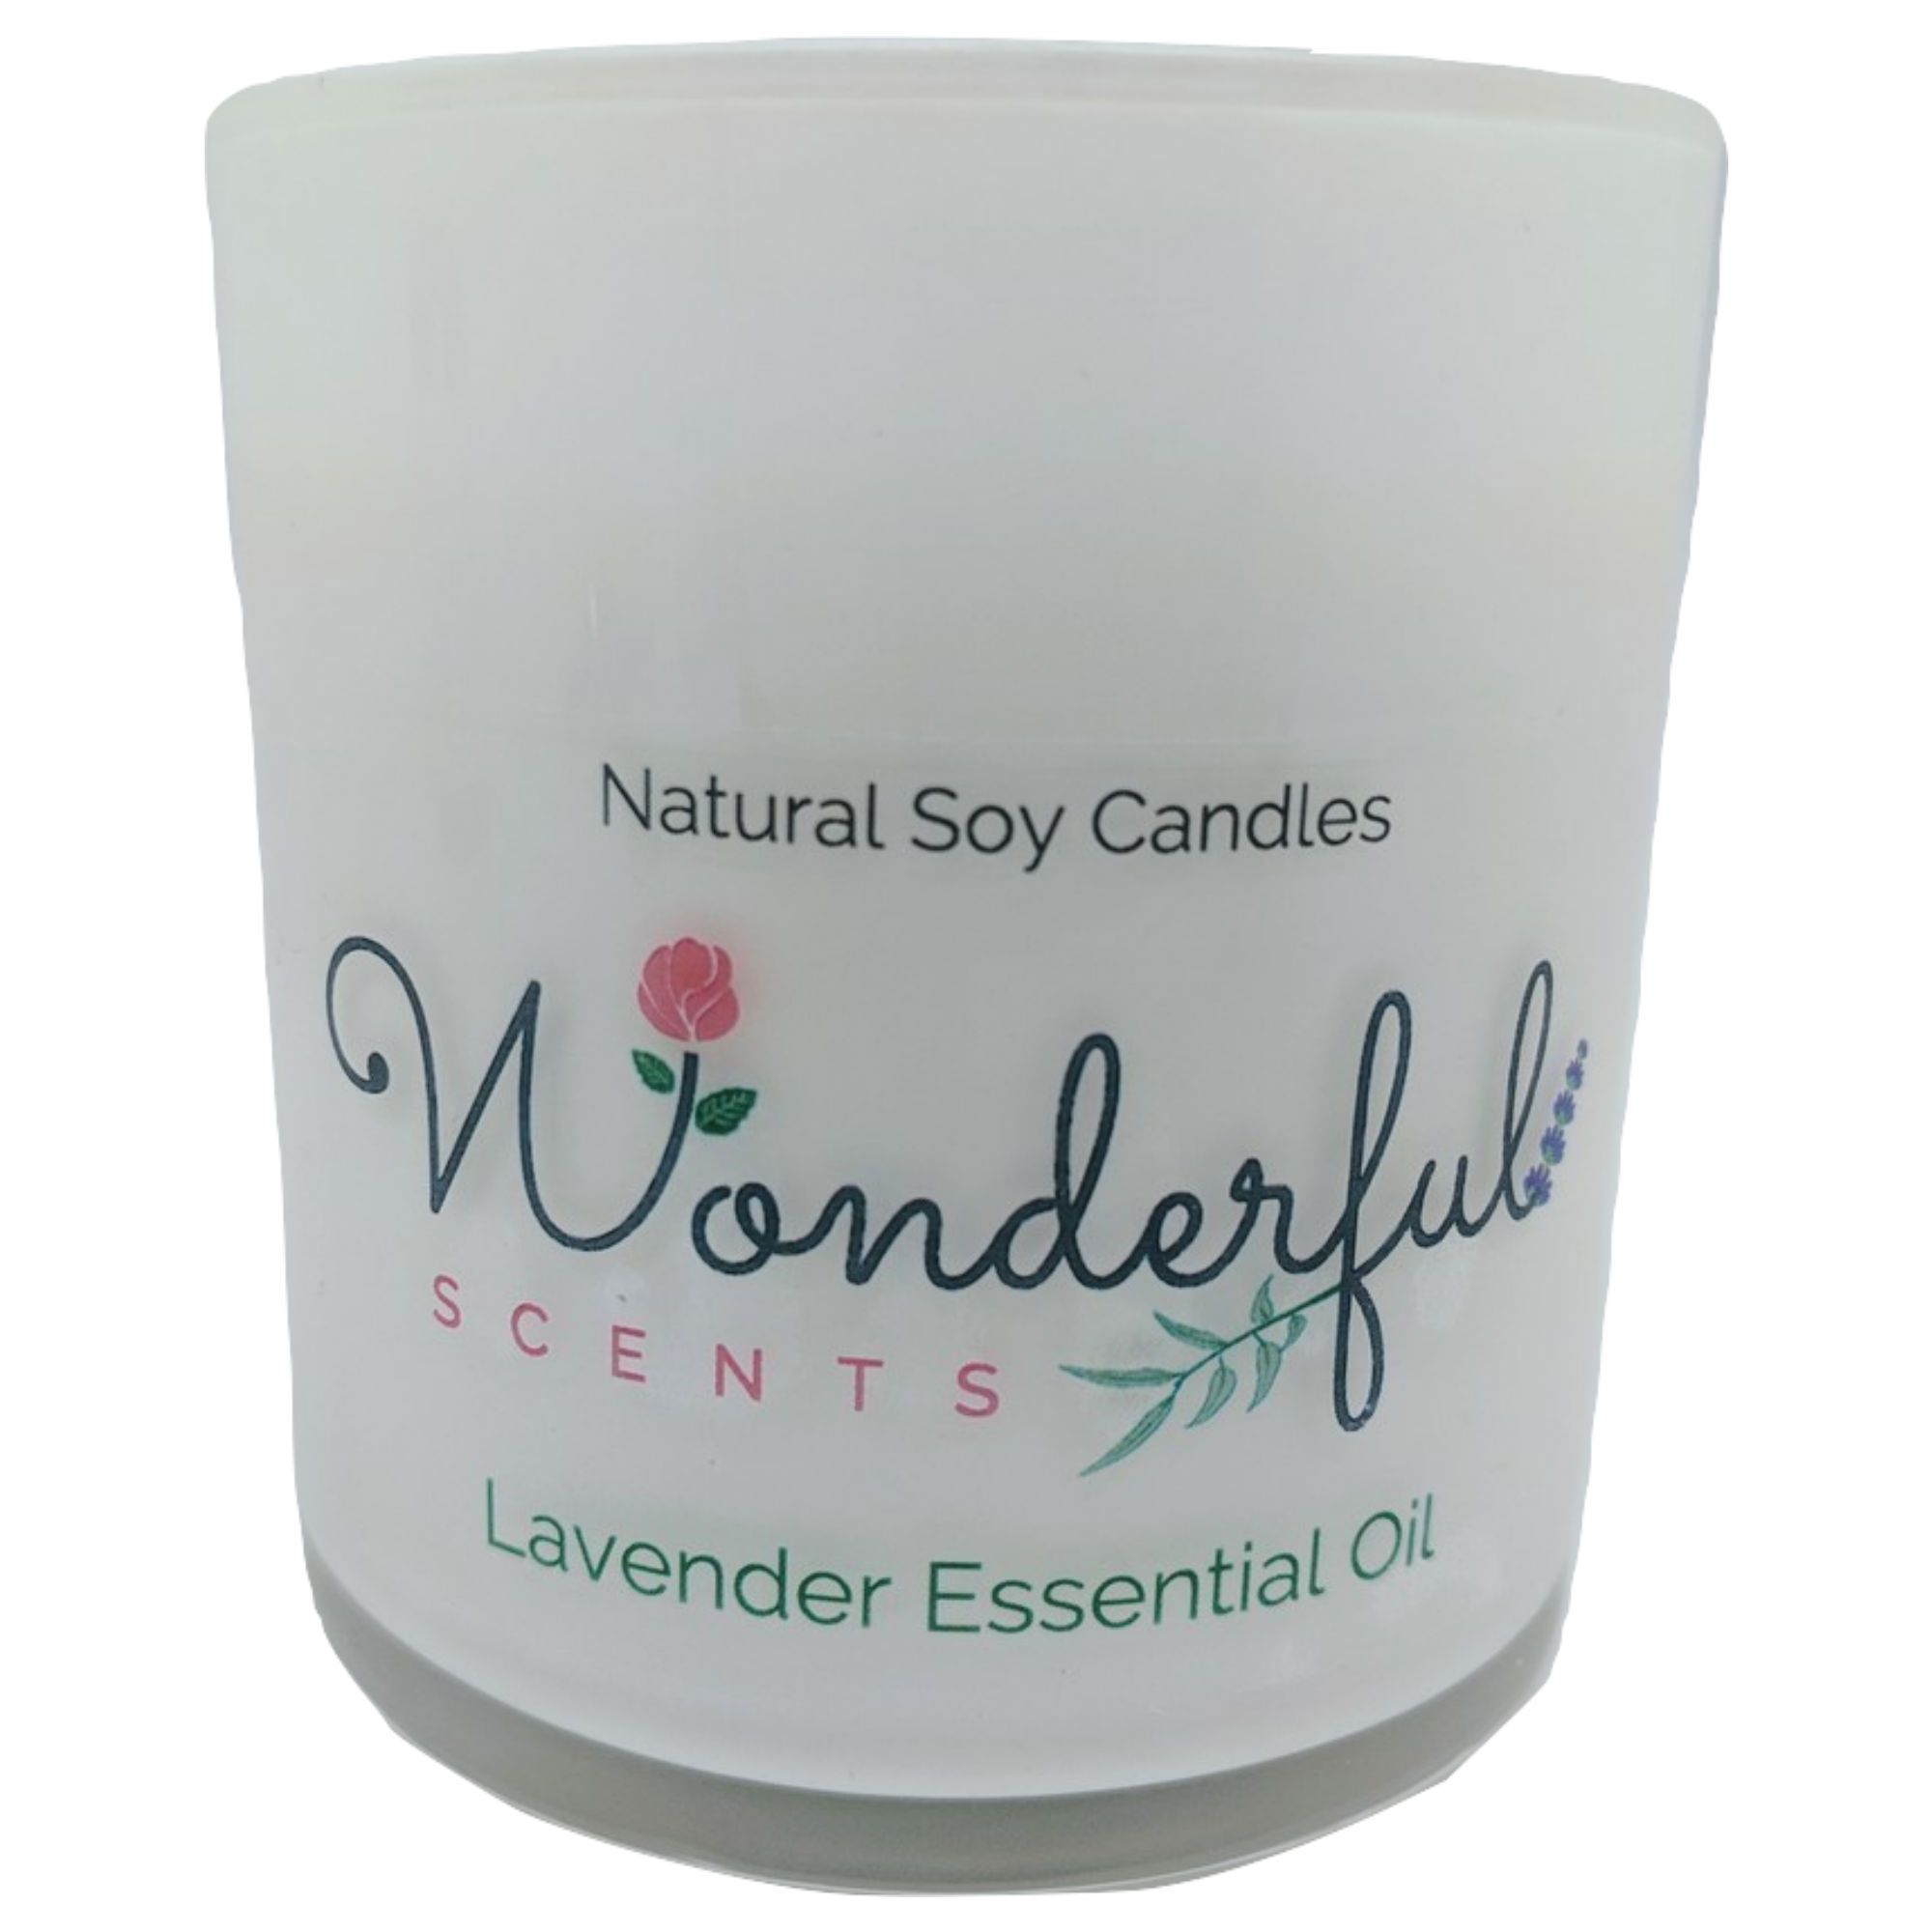 Wonderful Scents Lavender Tumbler Candle 11 oz Cotton Wick